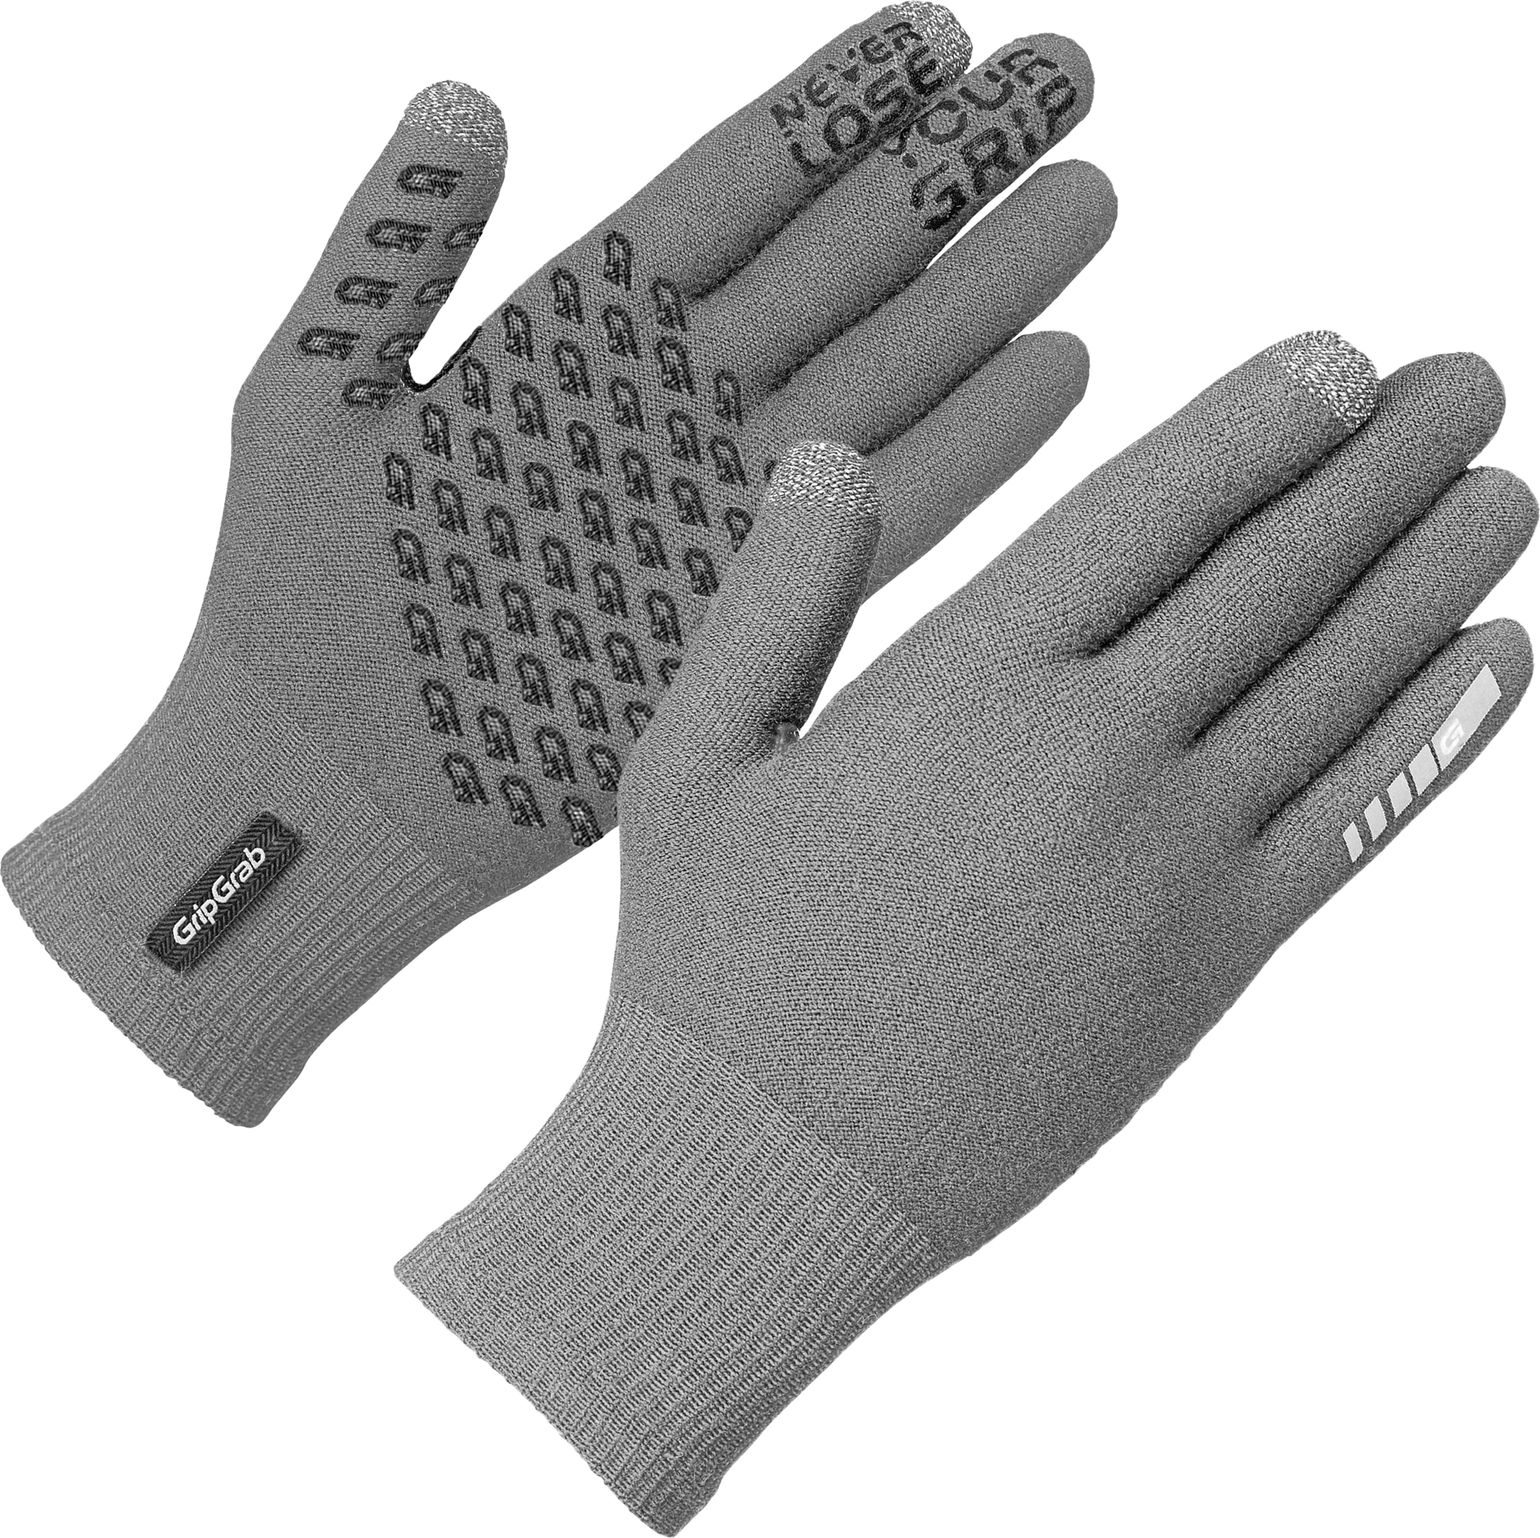 Primavera Merino Midseason Glove II Grey